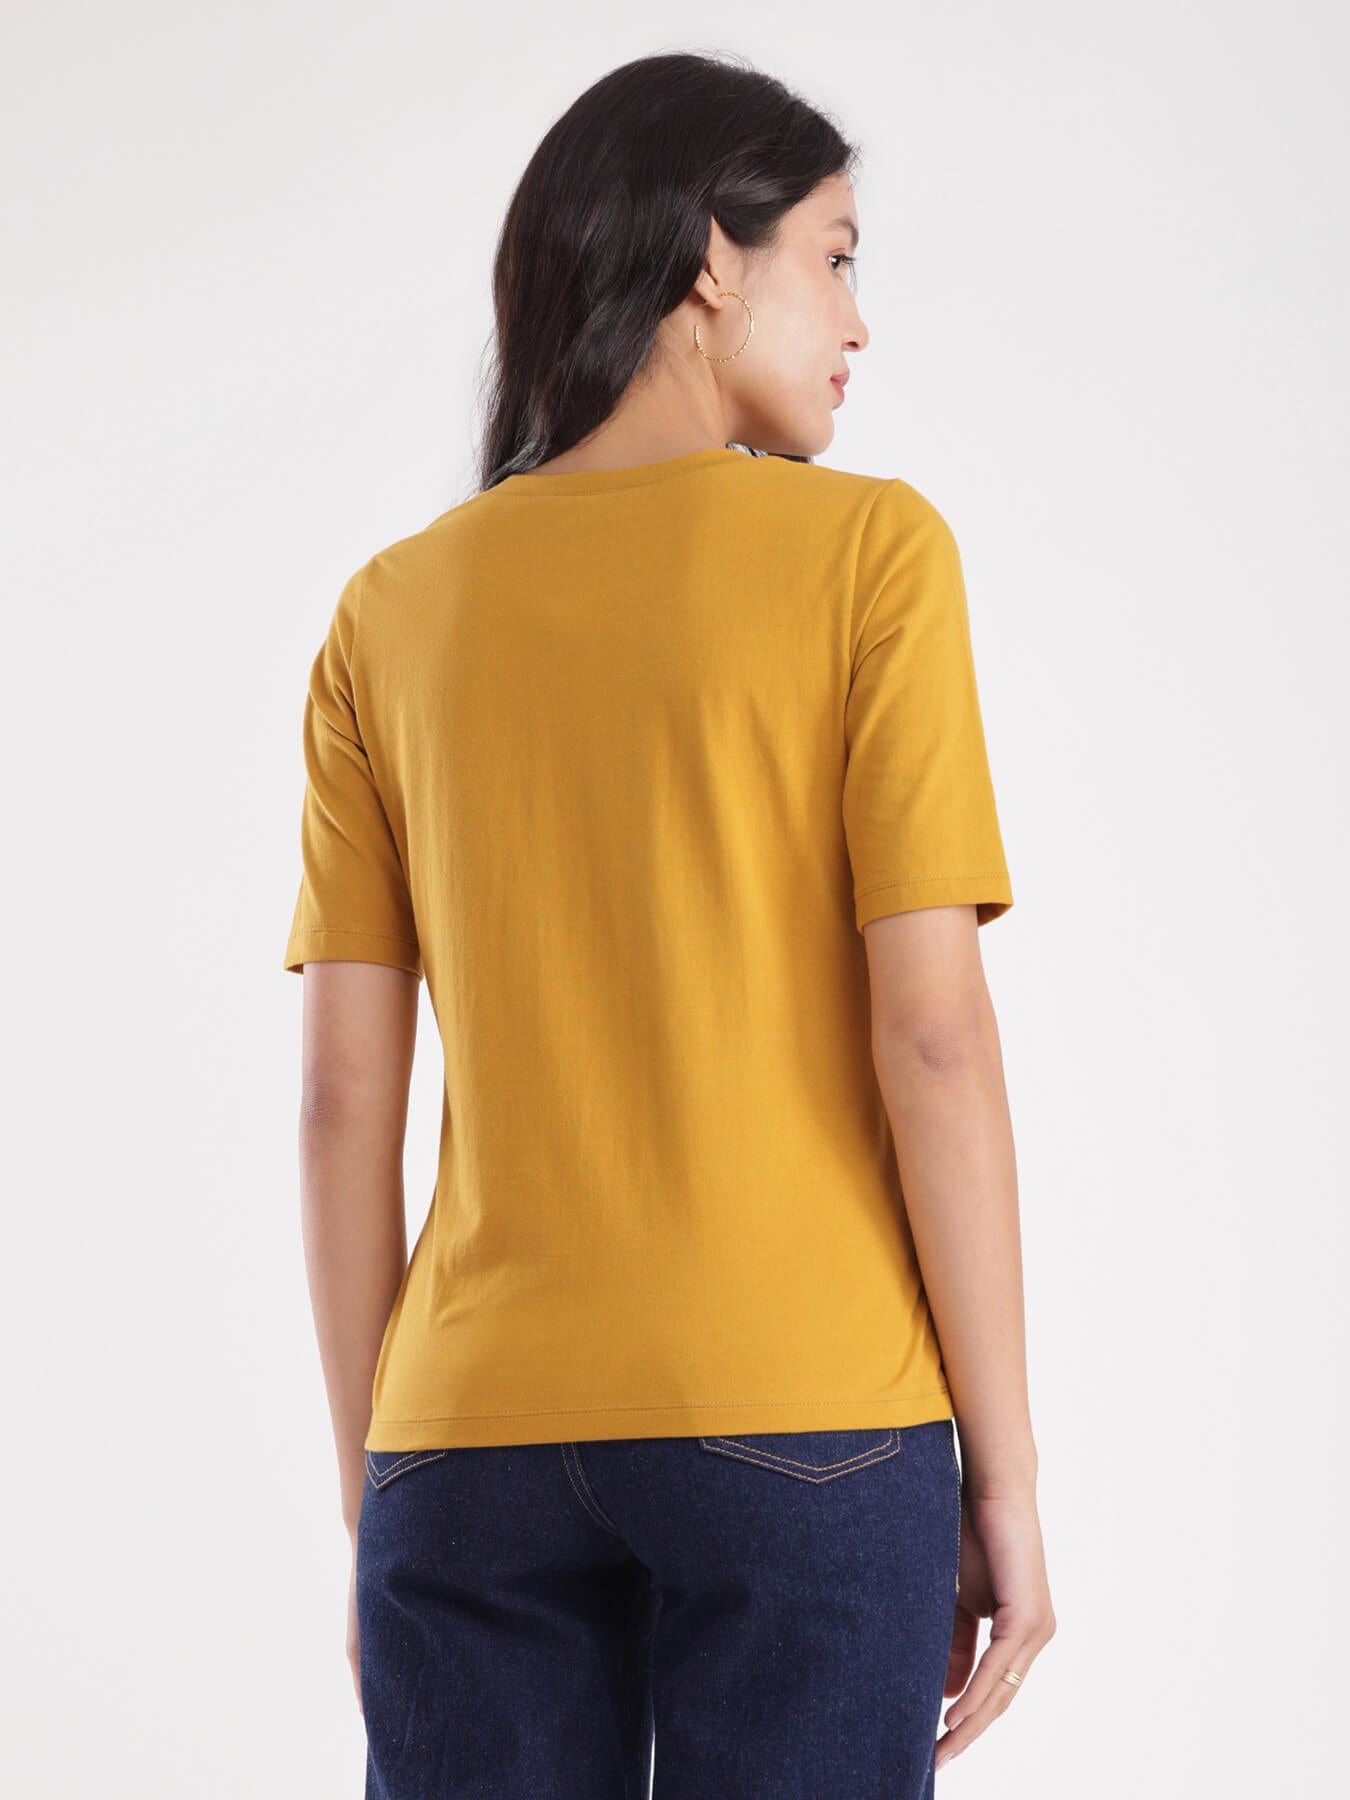 LivSoft Cotton T-Shirt - Mustard